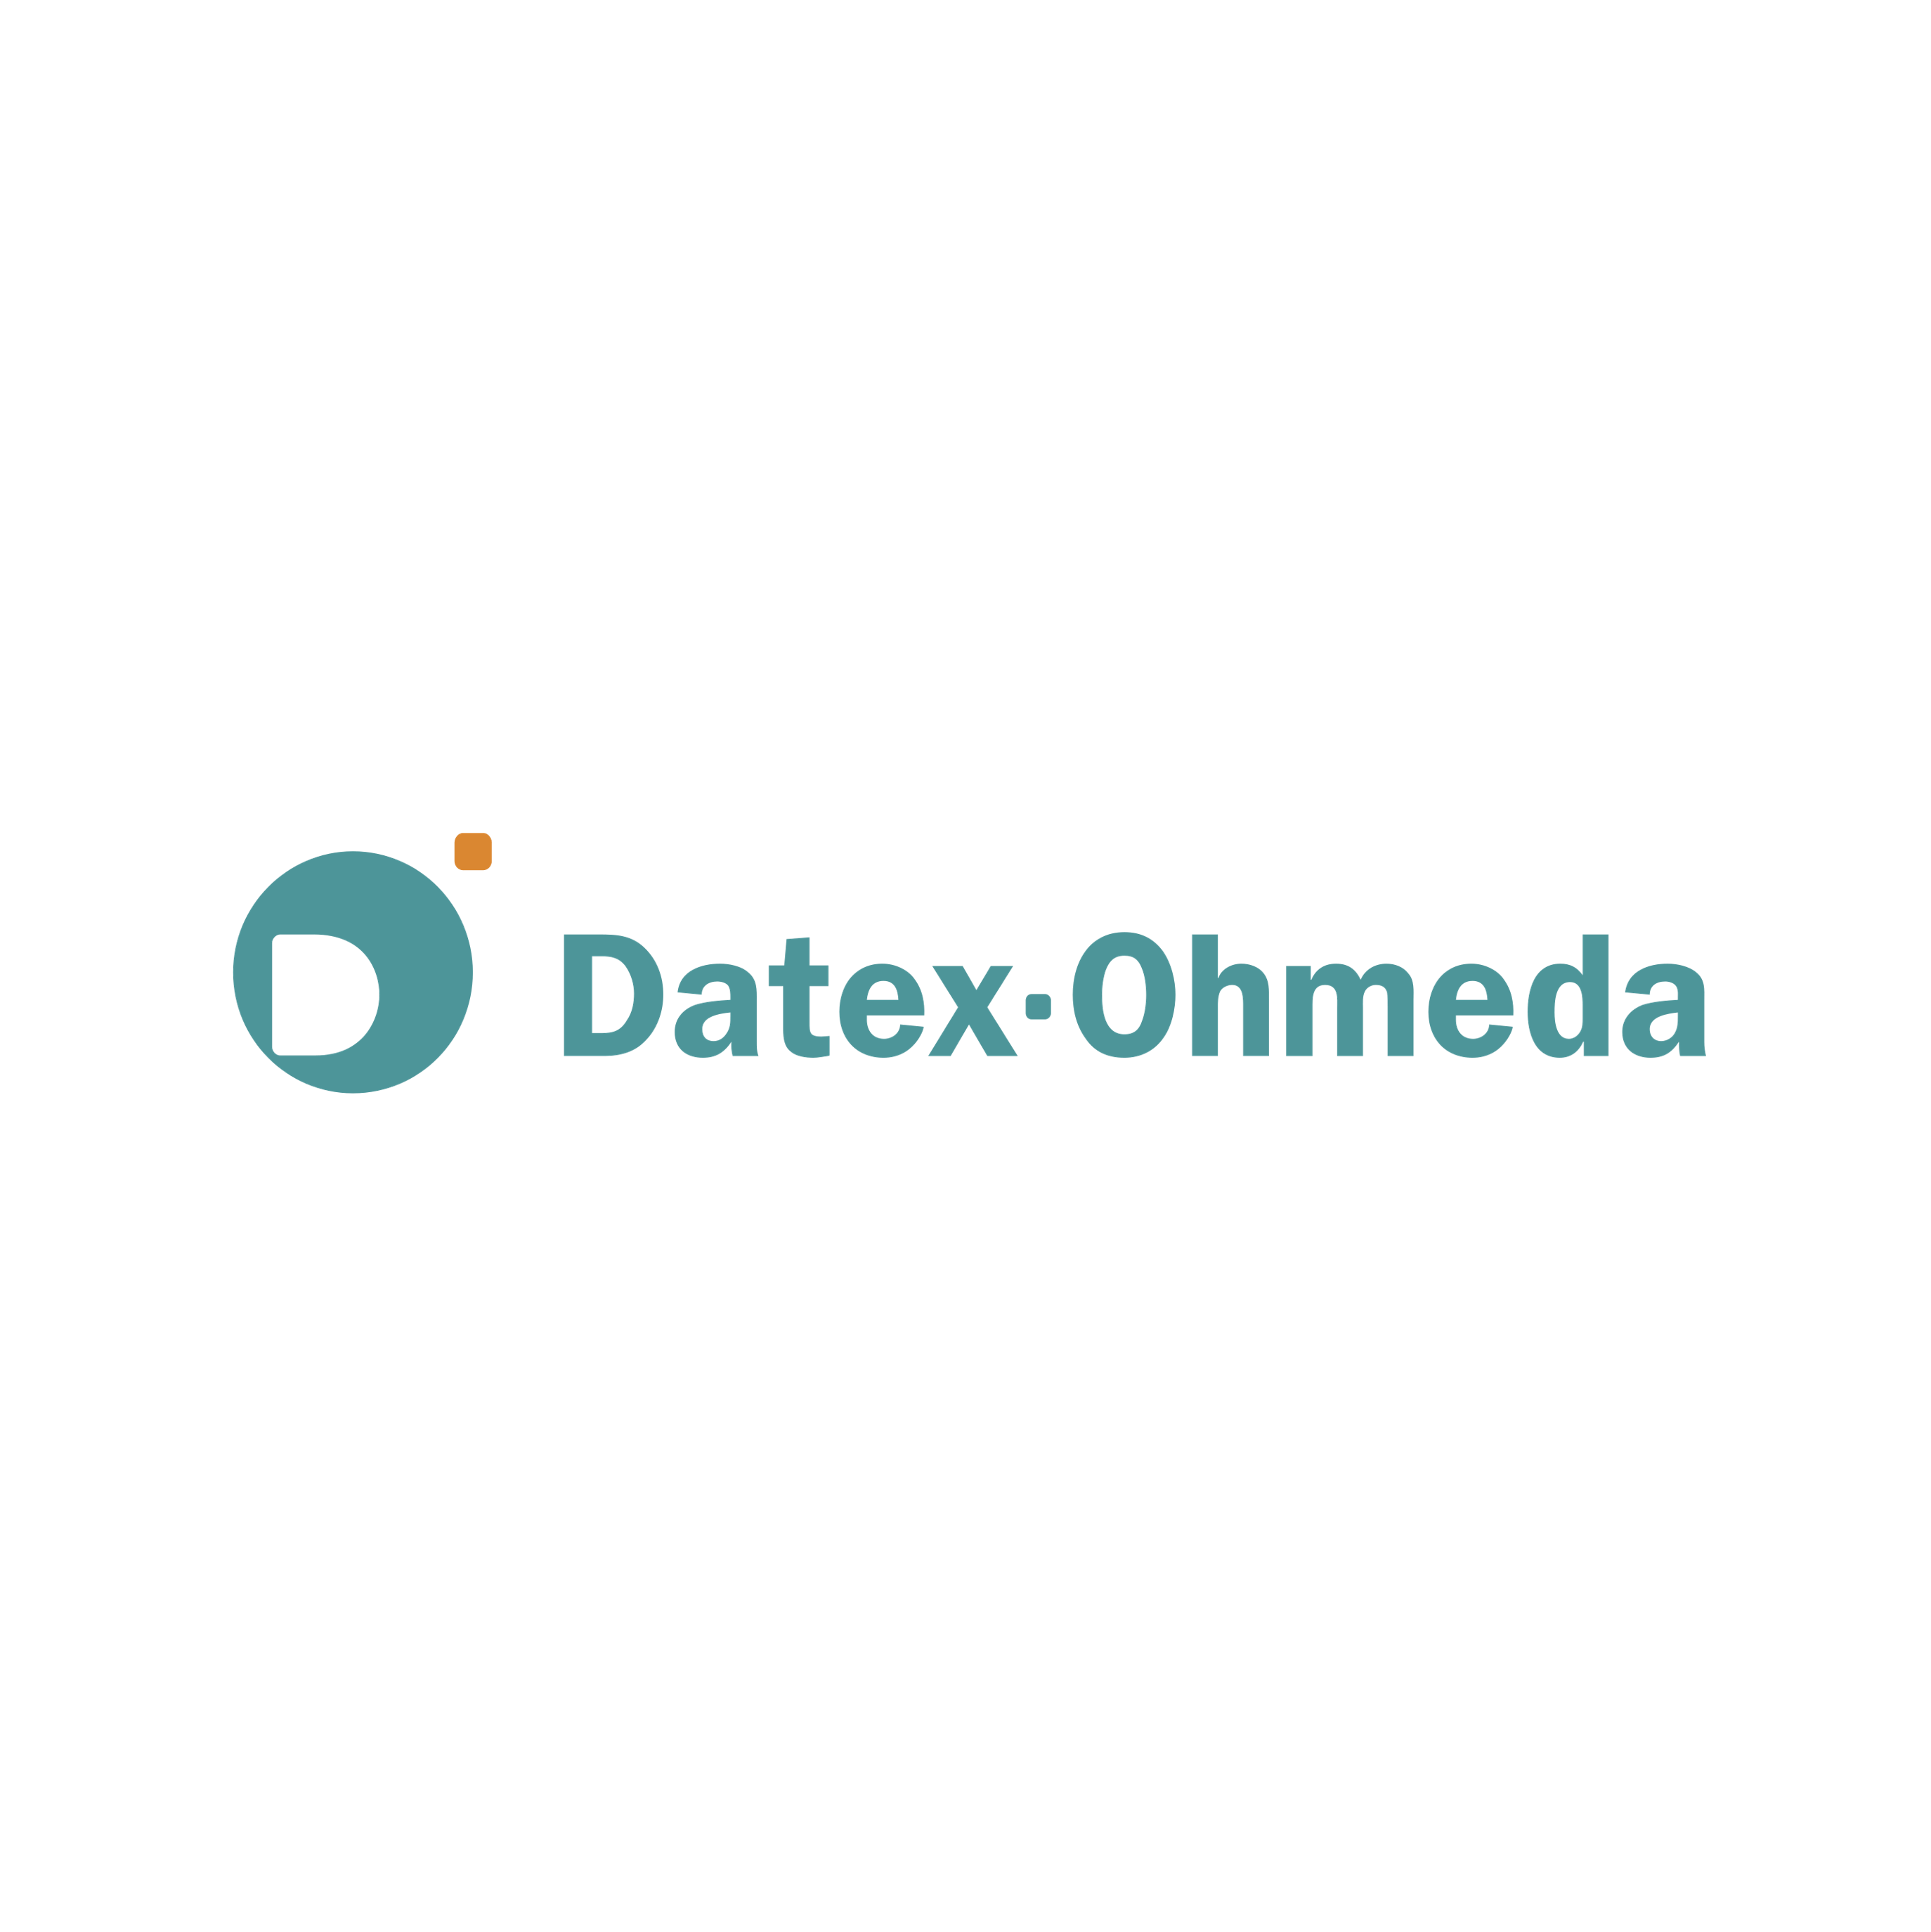 Equiptrack includes Datex-Ohmeda equipment